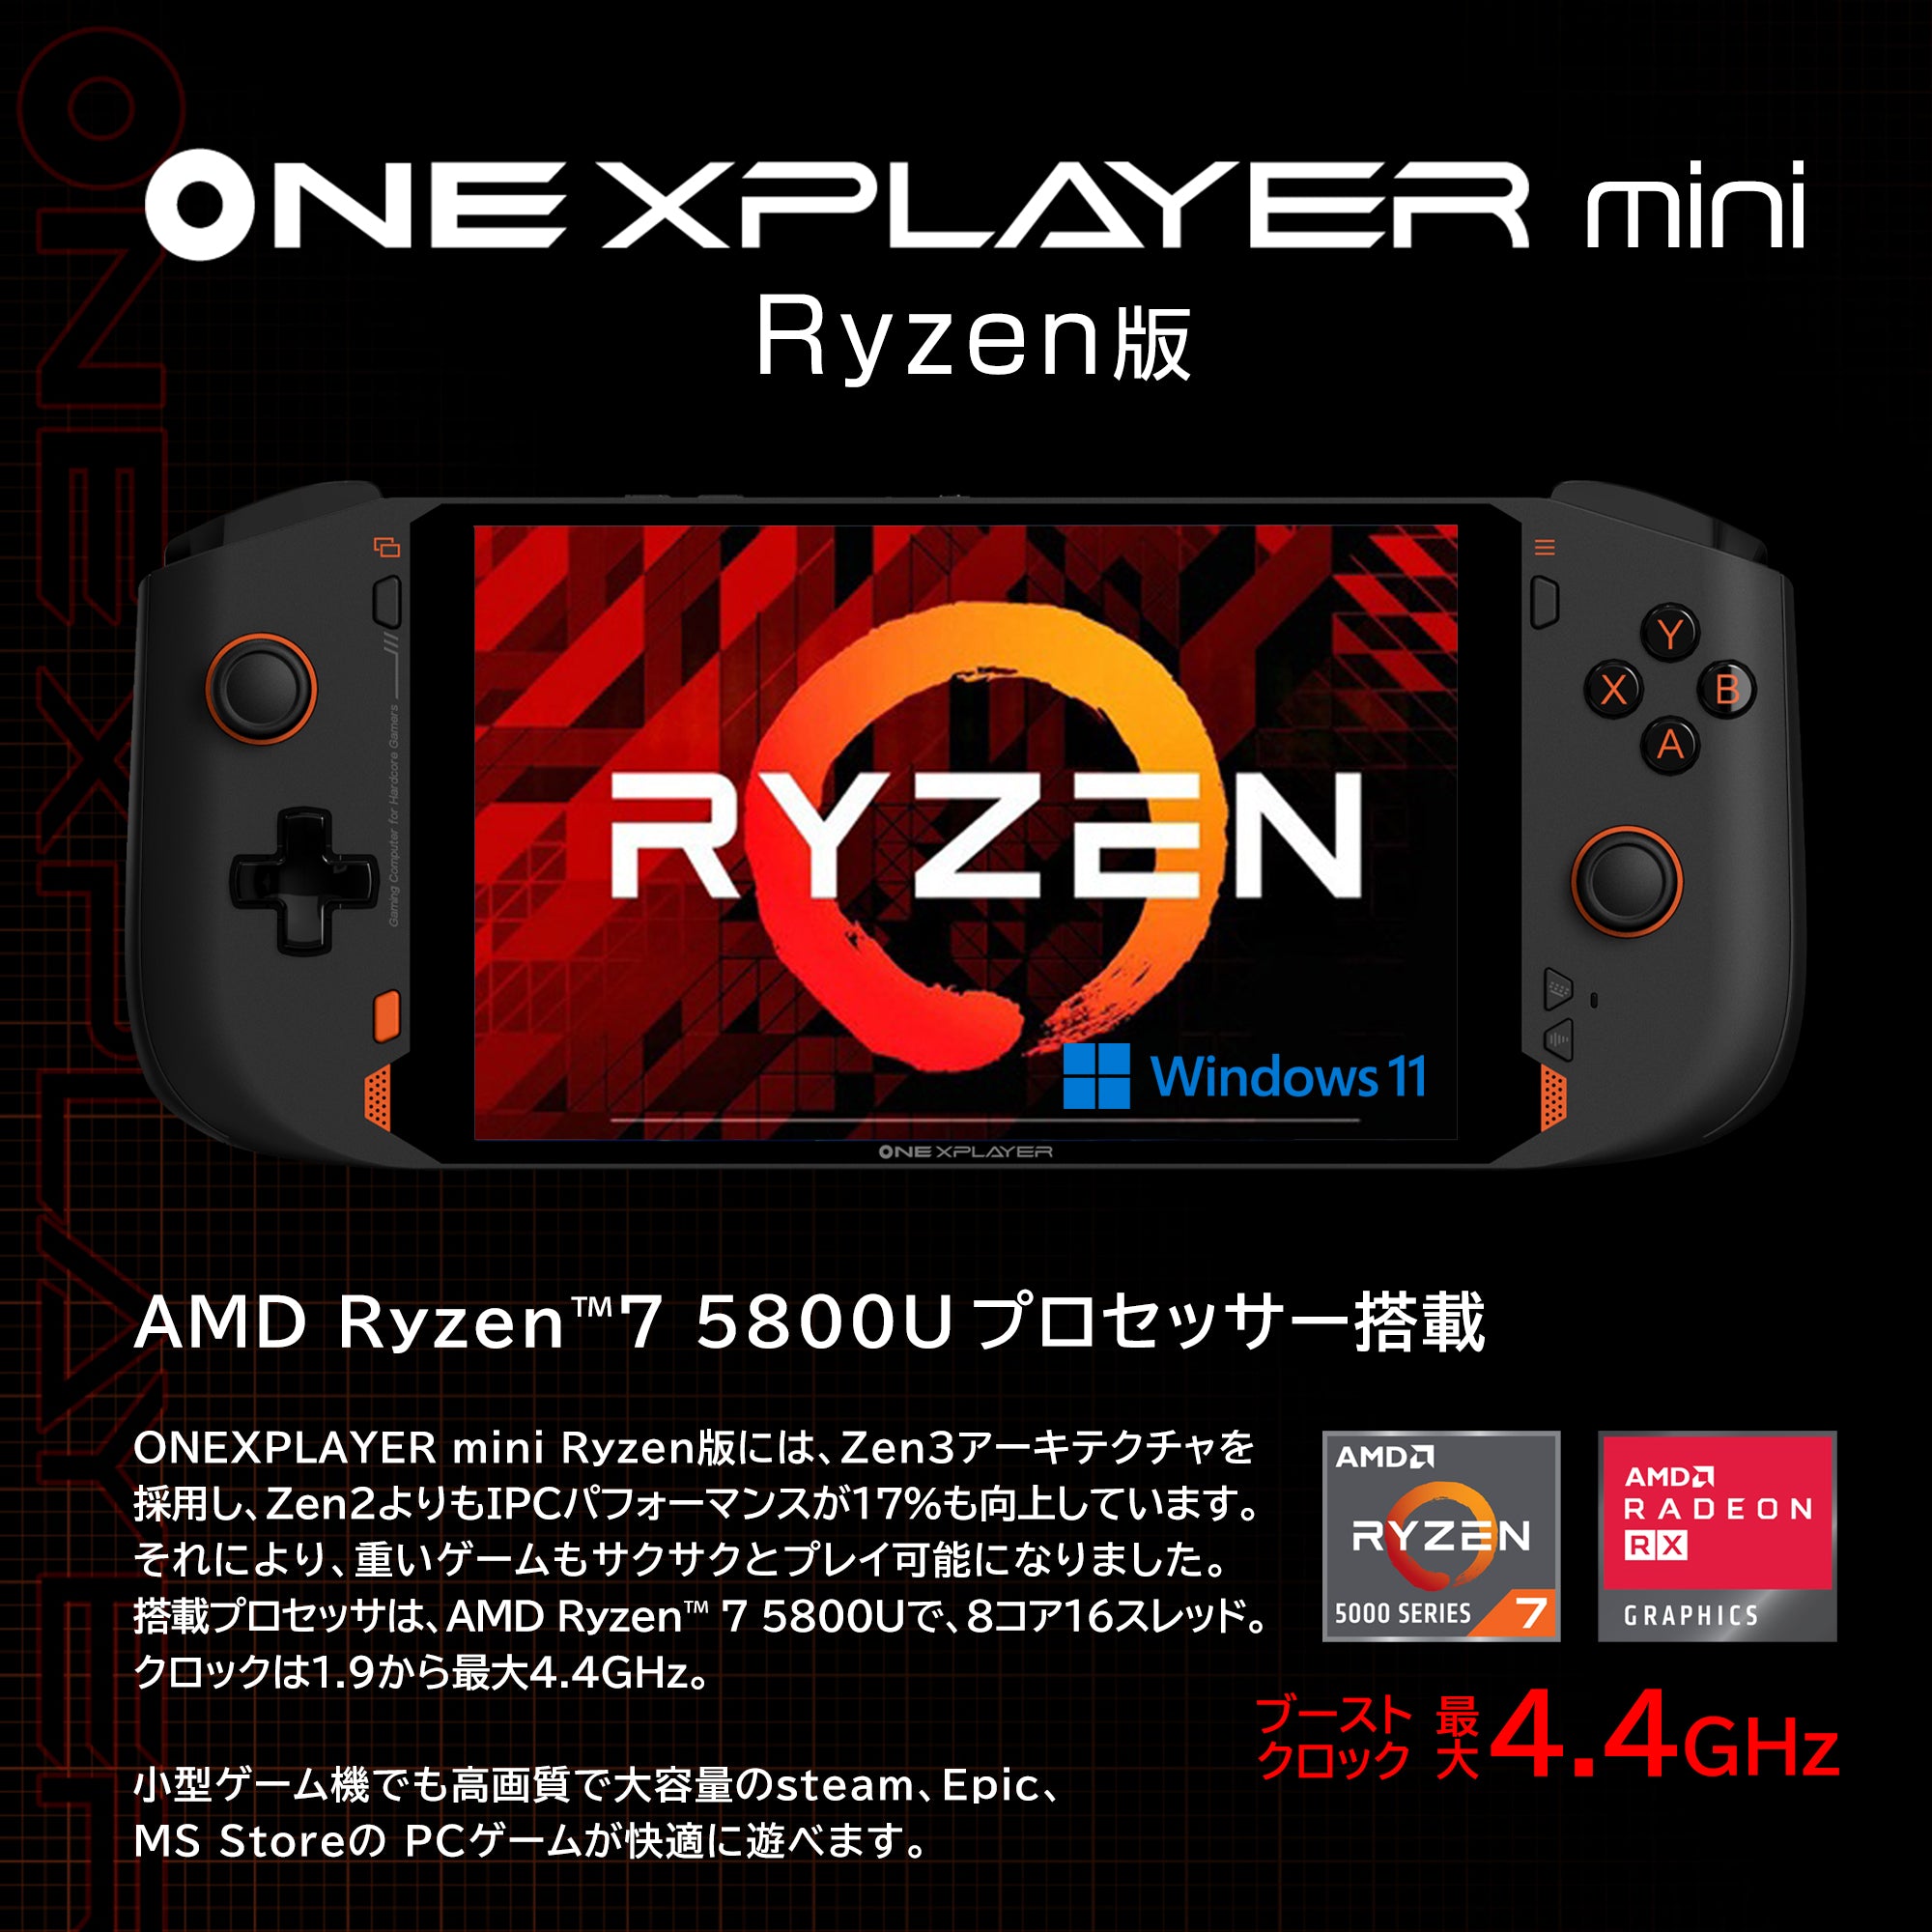 ONEXPLAYER mini Ryzen FHD版